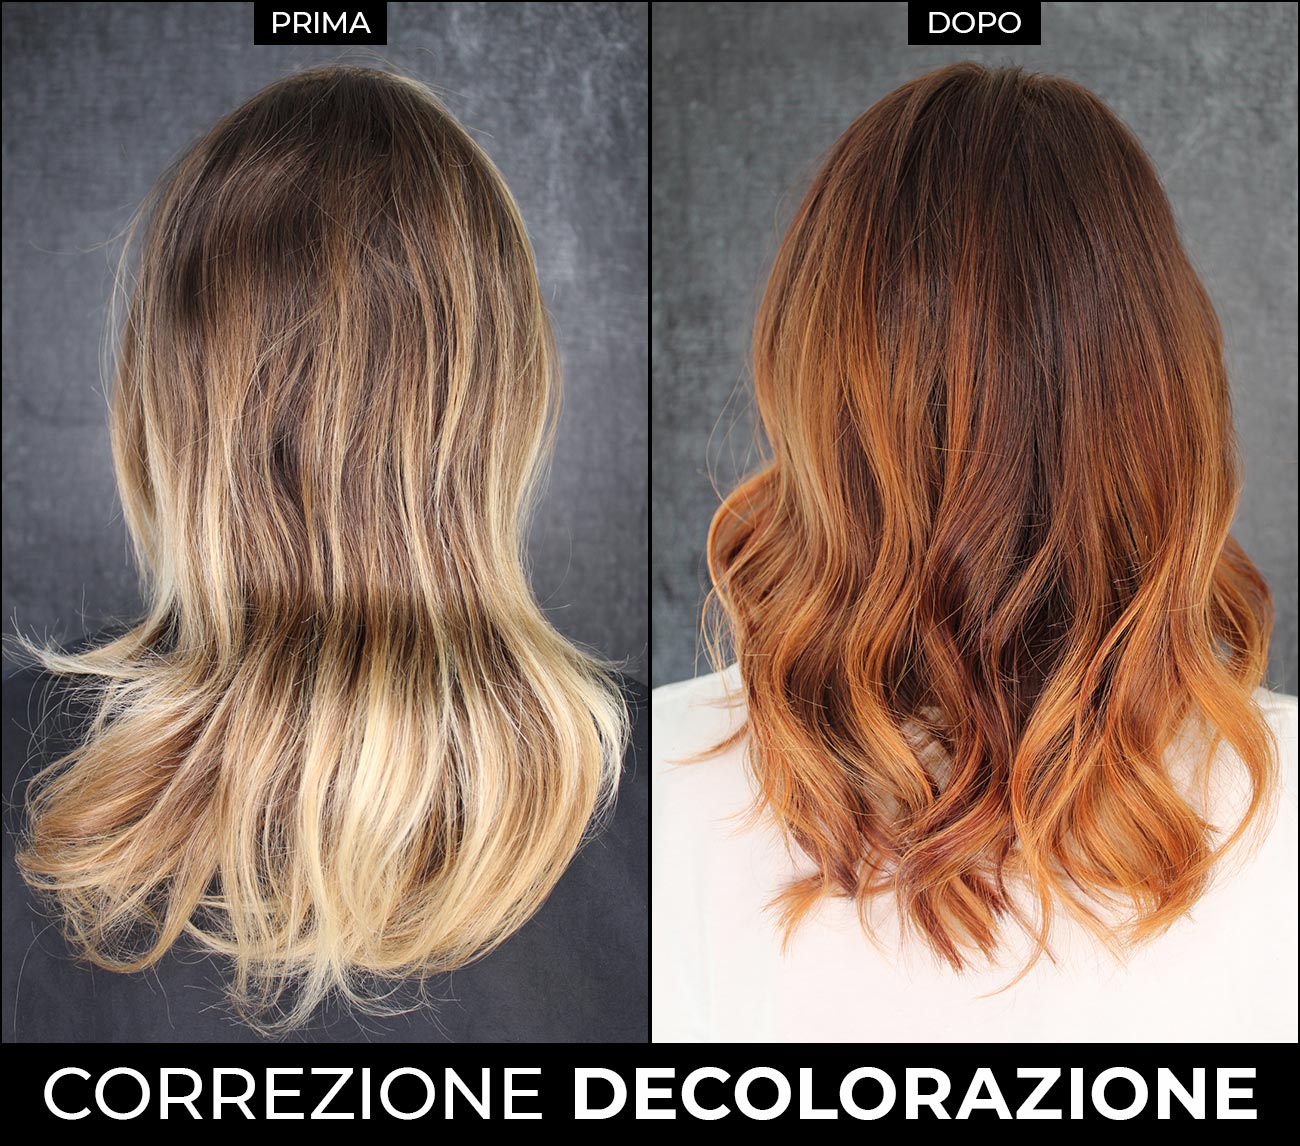 Correzione decolorazione a Bari | MASAMI - HAIR & BEAUTY